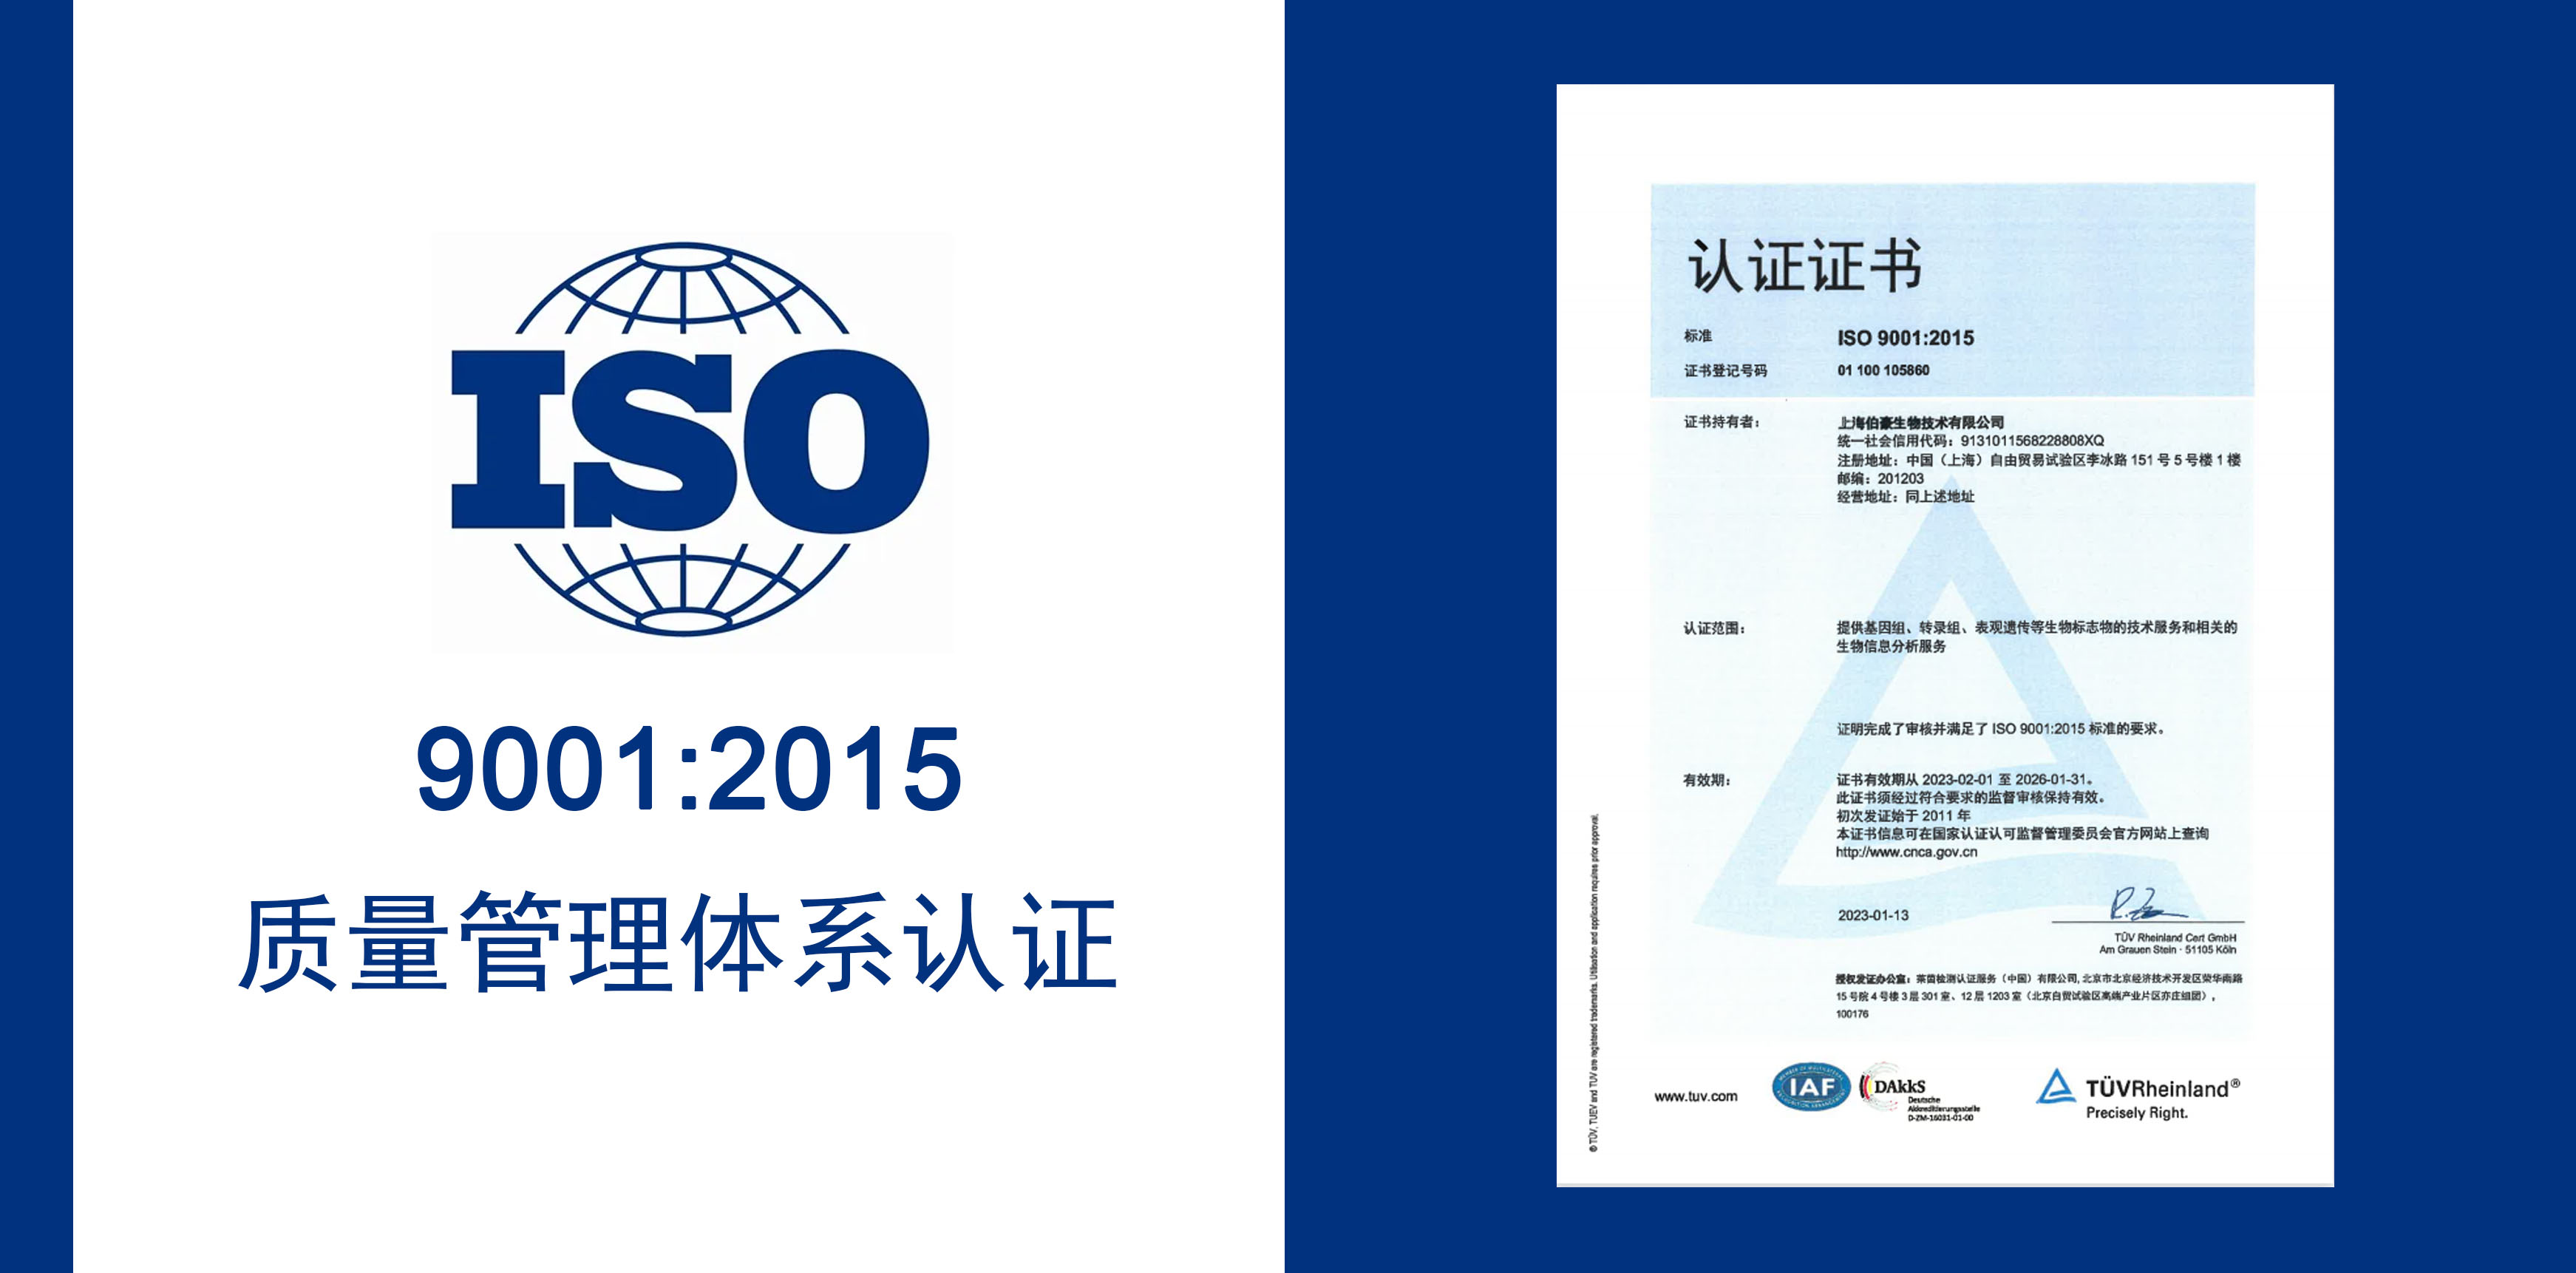 悦康生物获得 IOS9001 质量服务体系认证